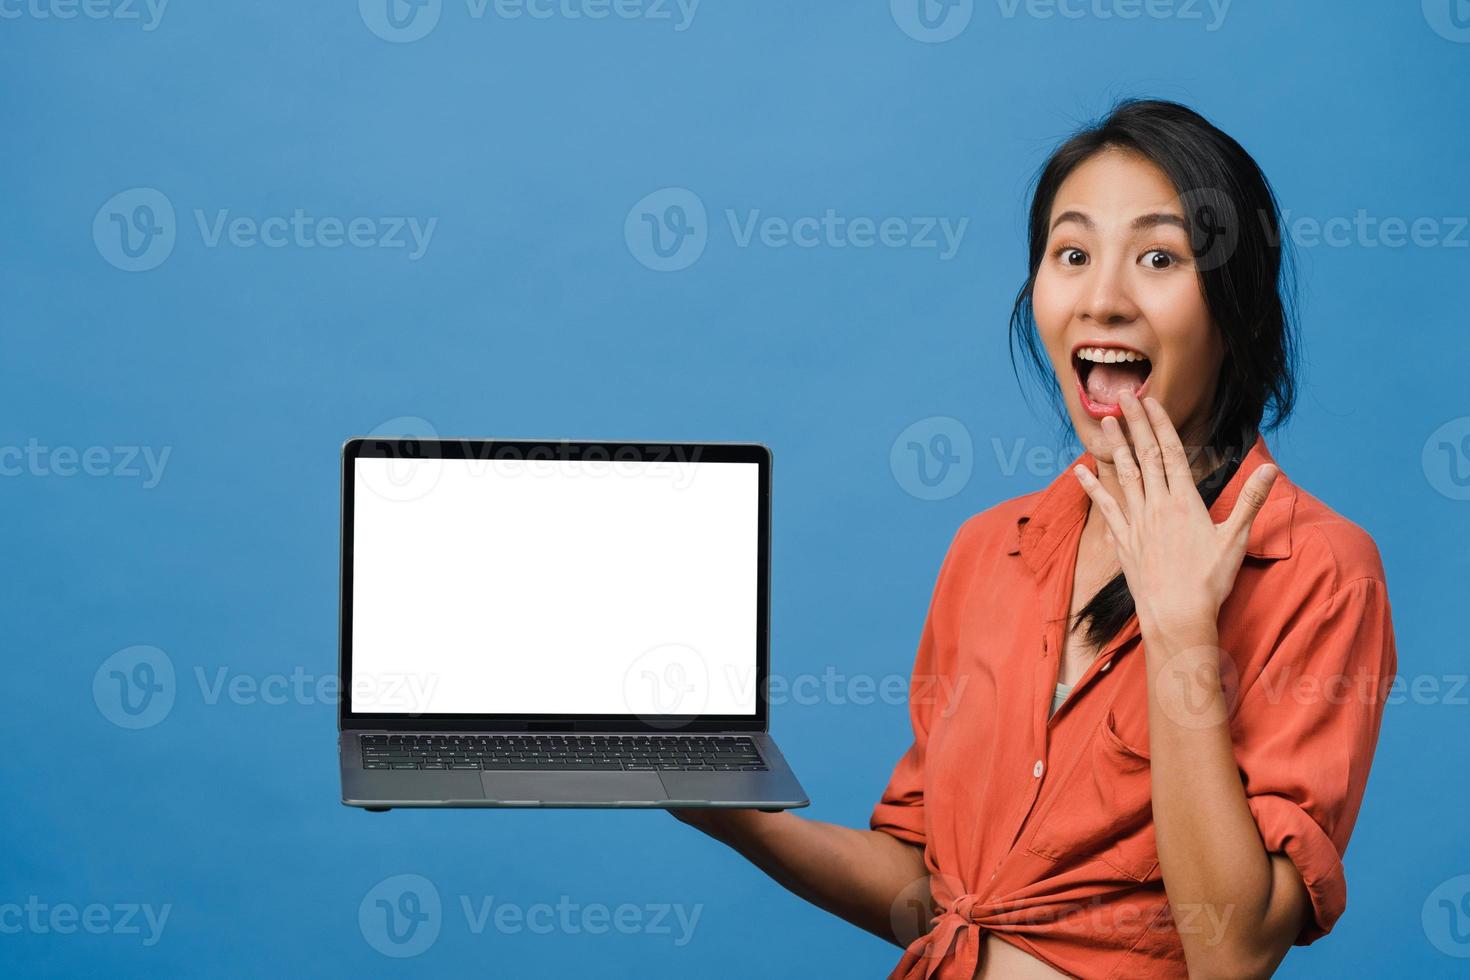 jeune femme asiatique montre un écran d'ordinateur portable vide avec une expression positive, sourit largement, vêtue de vêtements décontractés, se sentant heureuse isolée sur fond bleu. ordinateur avec écran blanc en main féminine. photo